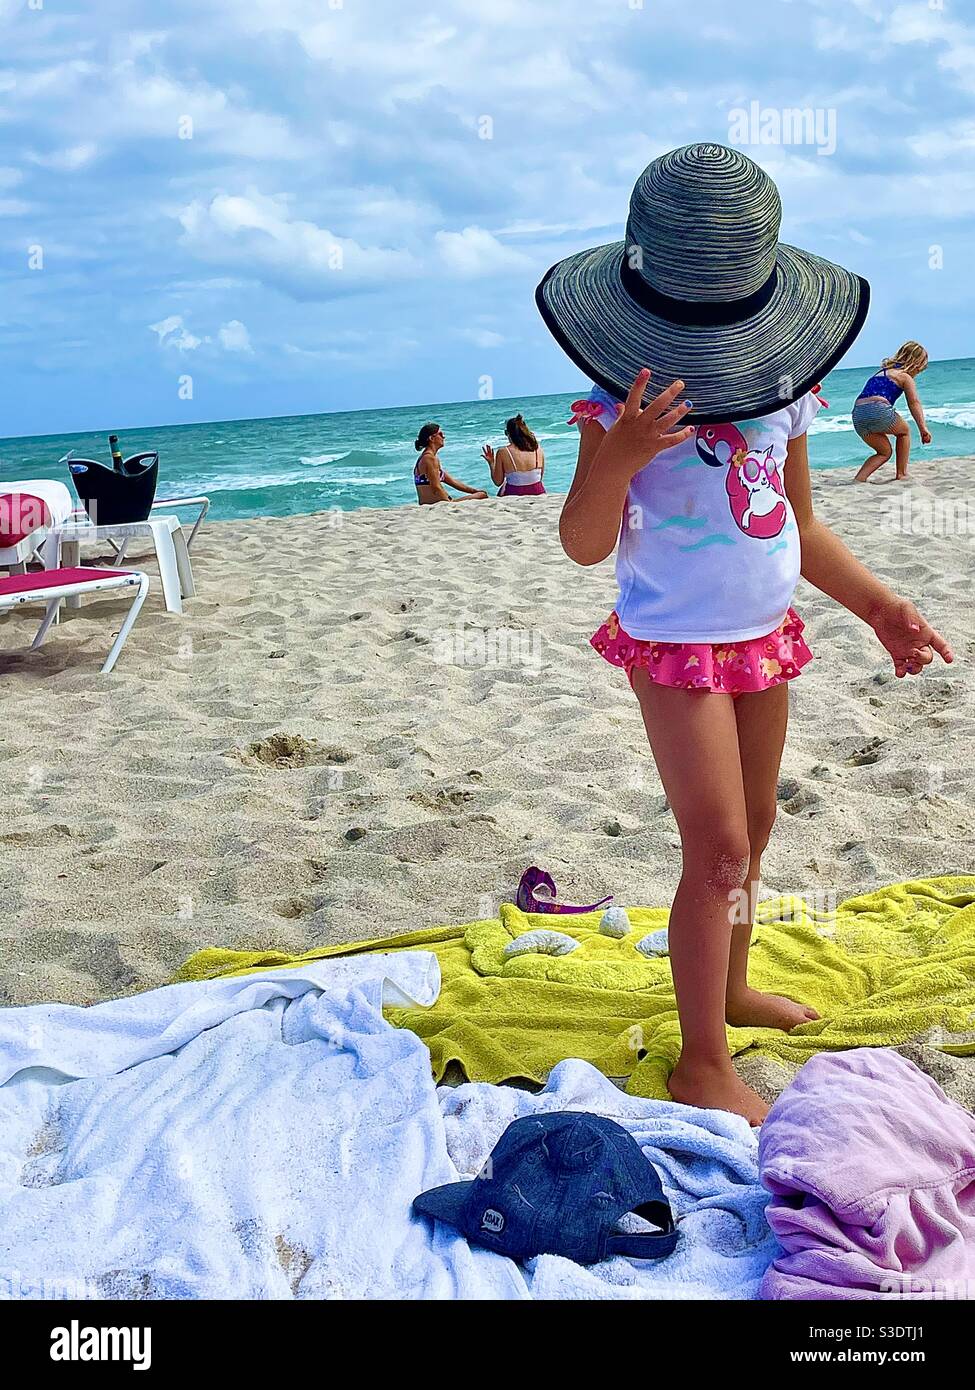 Una niña pequeña con traje de baño rosa y blanco se esconde bajo un sombrero  de sol adulto en un complejo de playa en Miami South Beach, Florida,  Estados Unidos Fotografía de